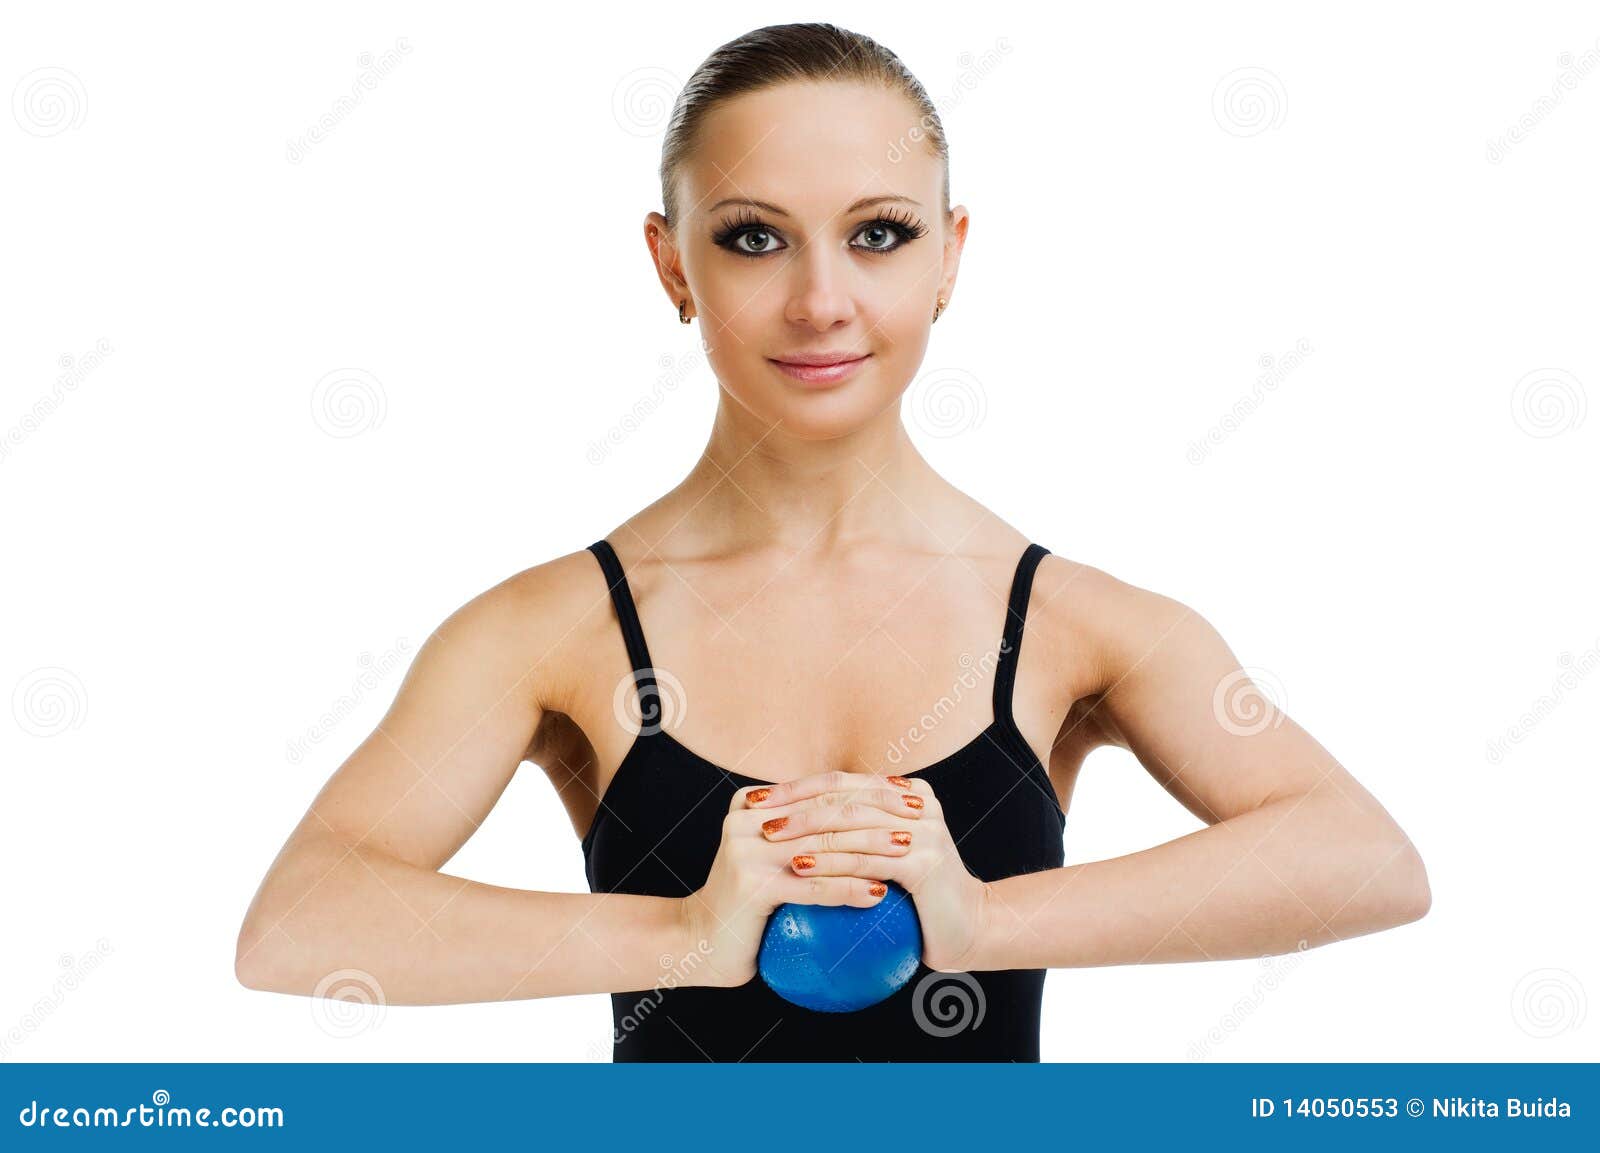 упражнения на грудь женщинам видео фото 44